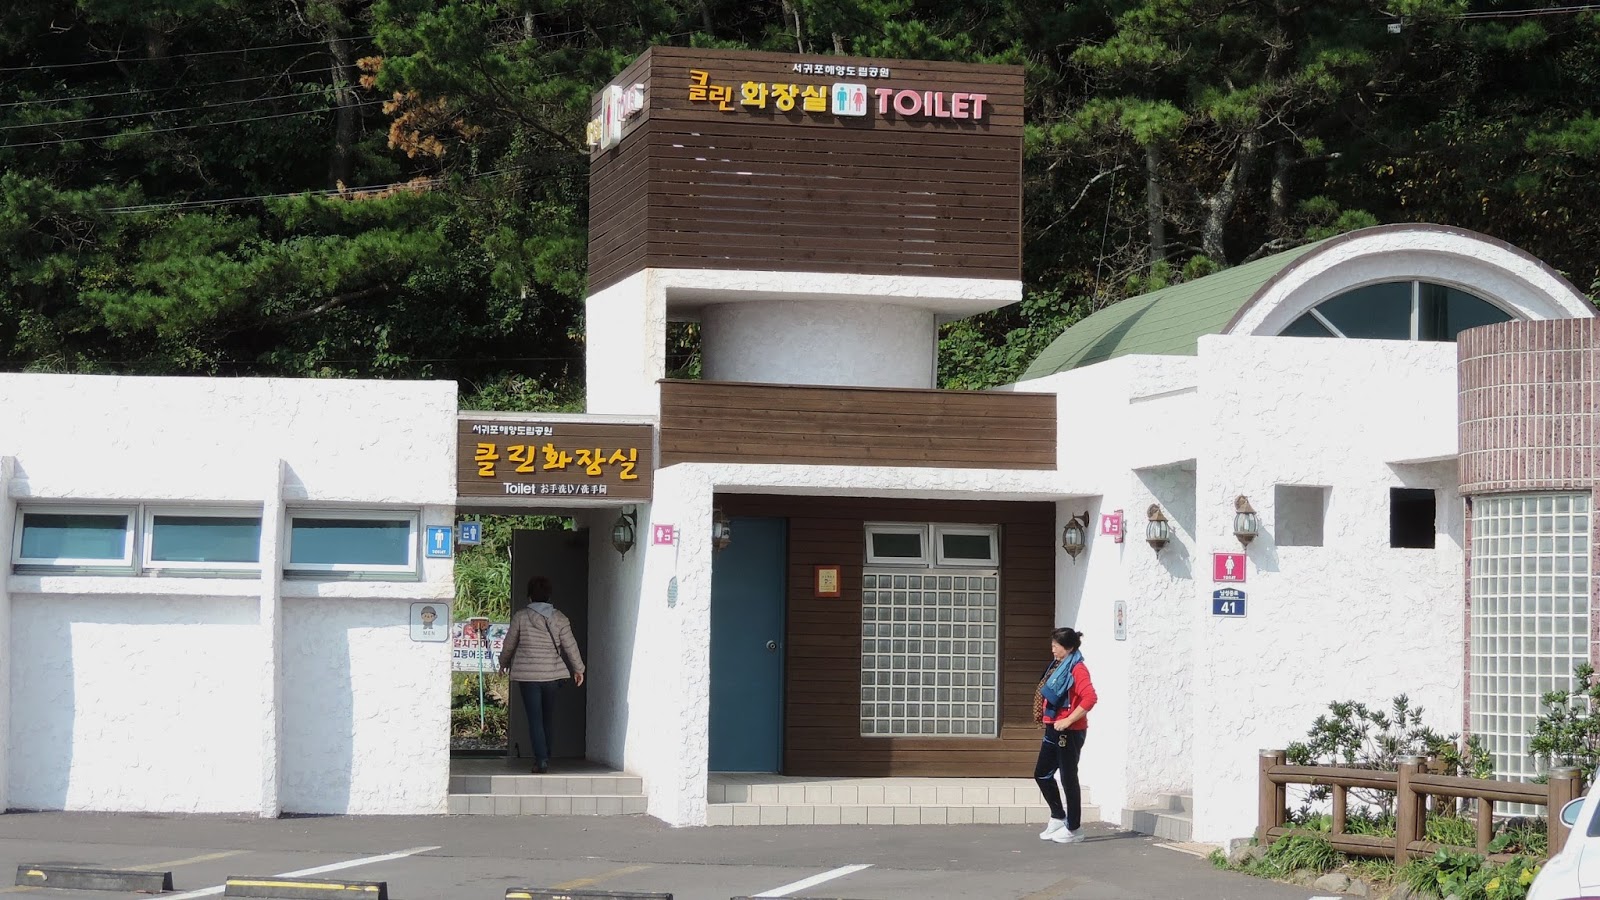 Káº¿t quáº£ hÃ¬nh áº£nh cho korea toilet public